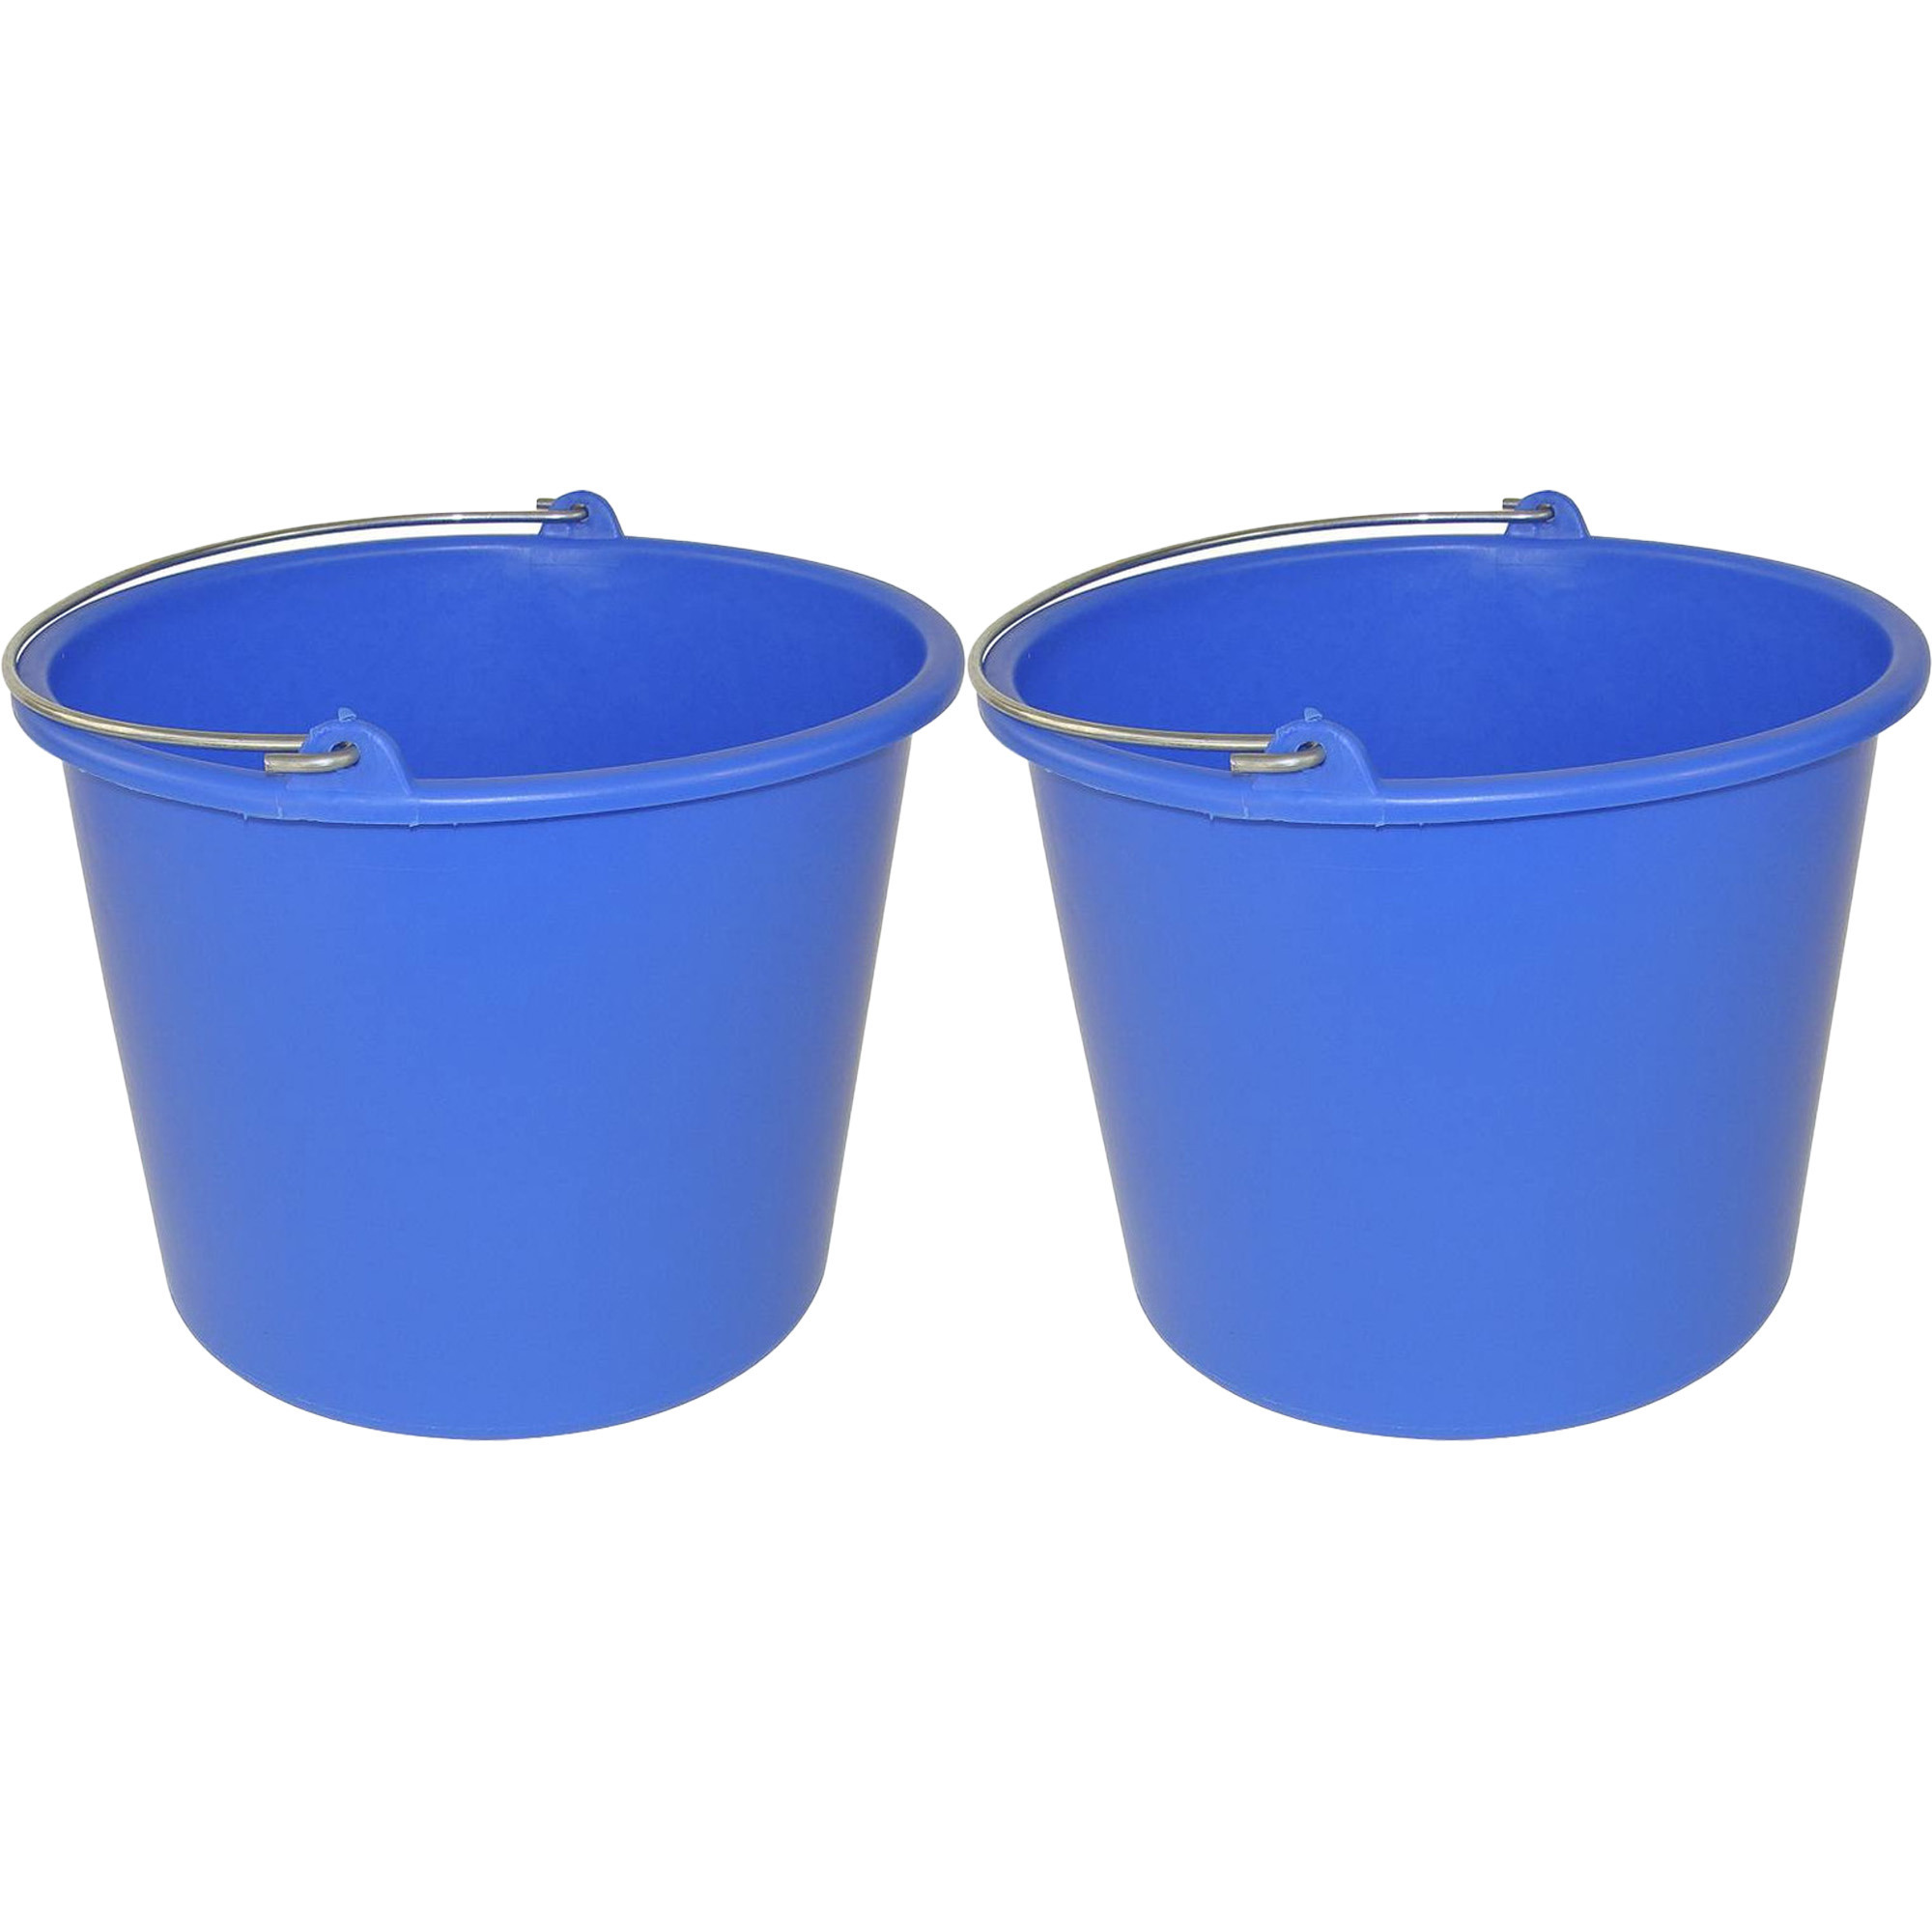 Huishoud emmer - 2x - blauw - kunststof - 12 liter - D29 x H35 cm -